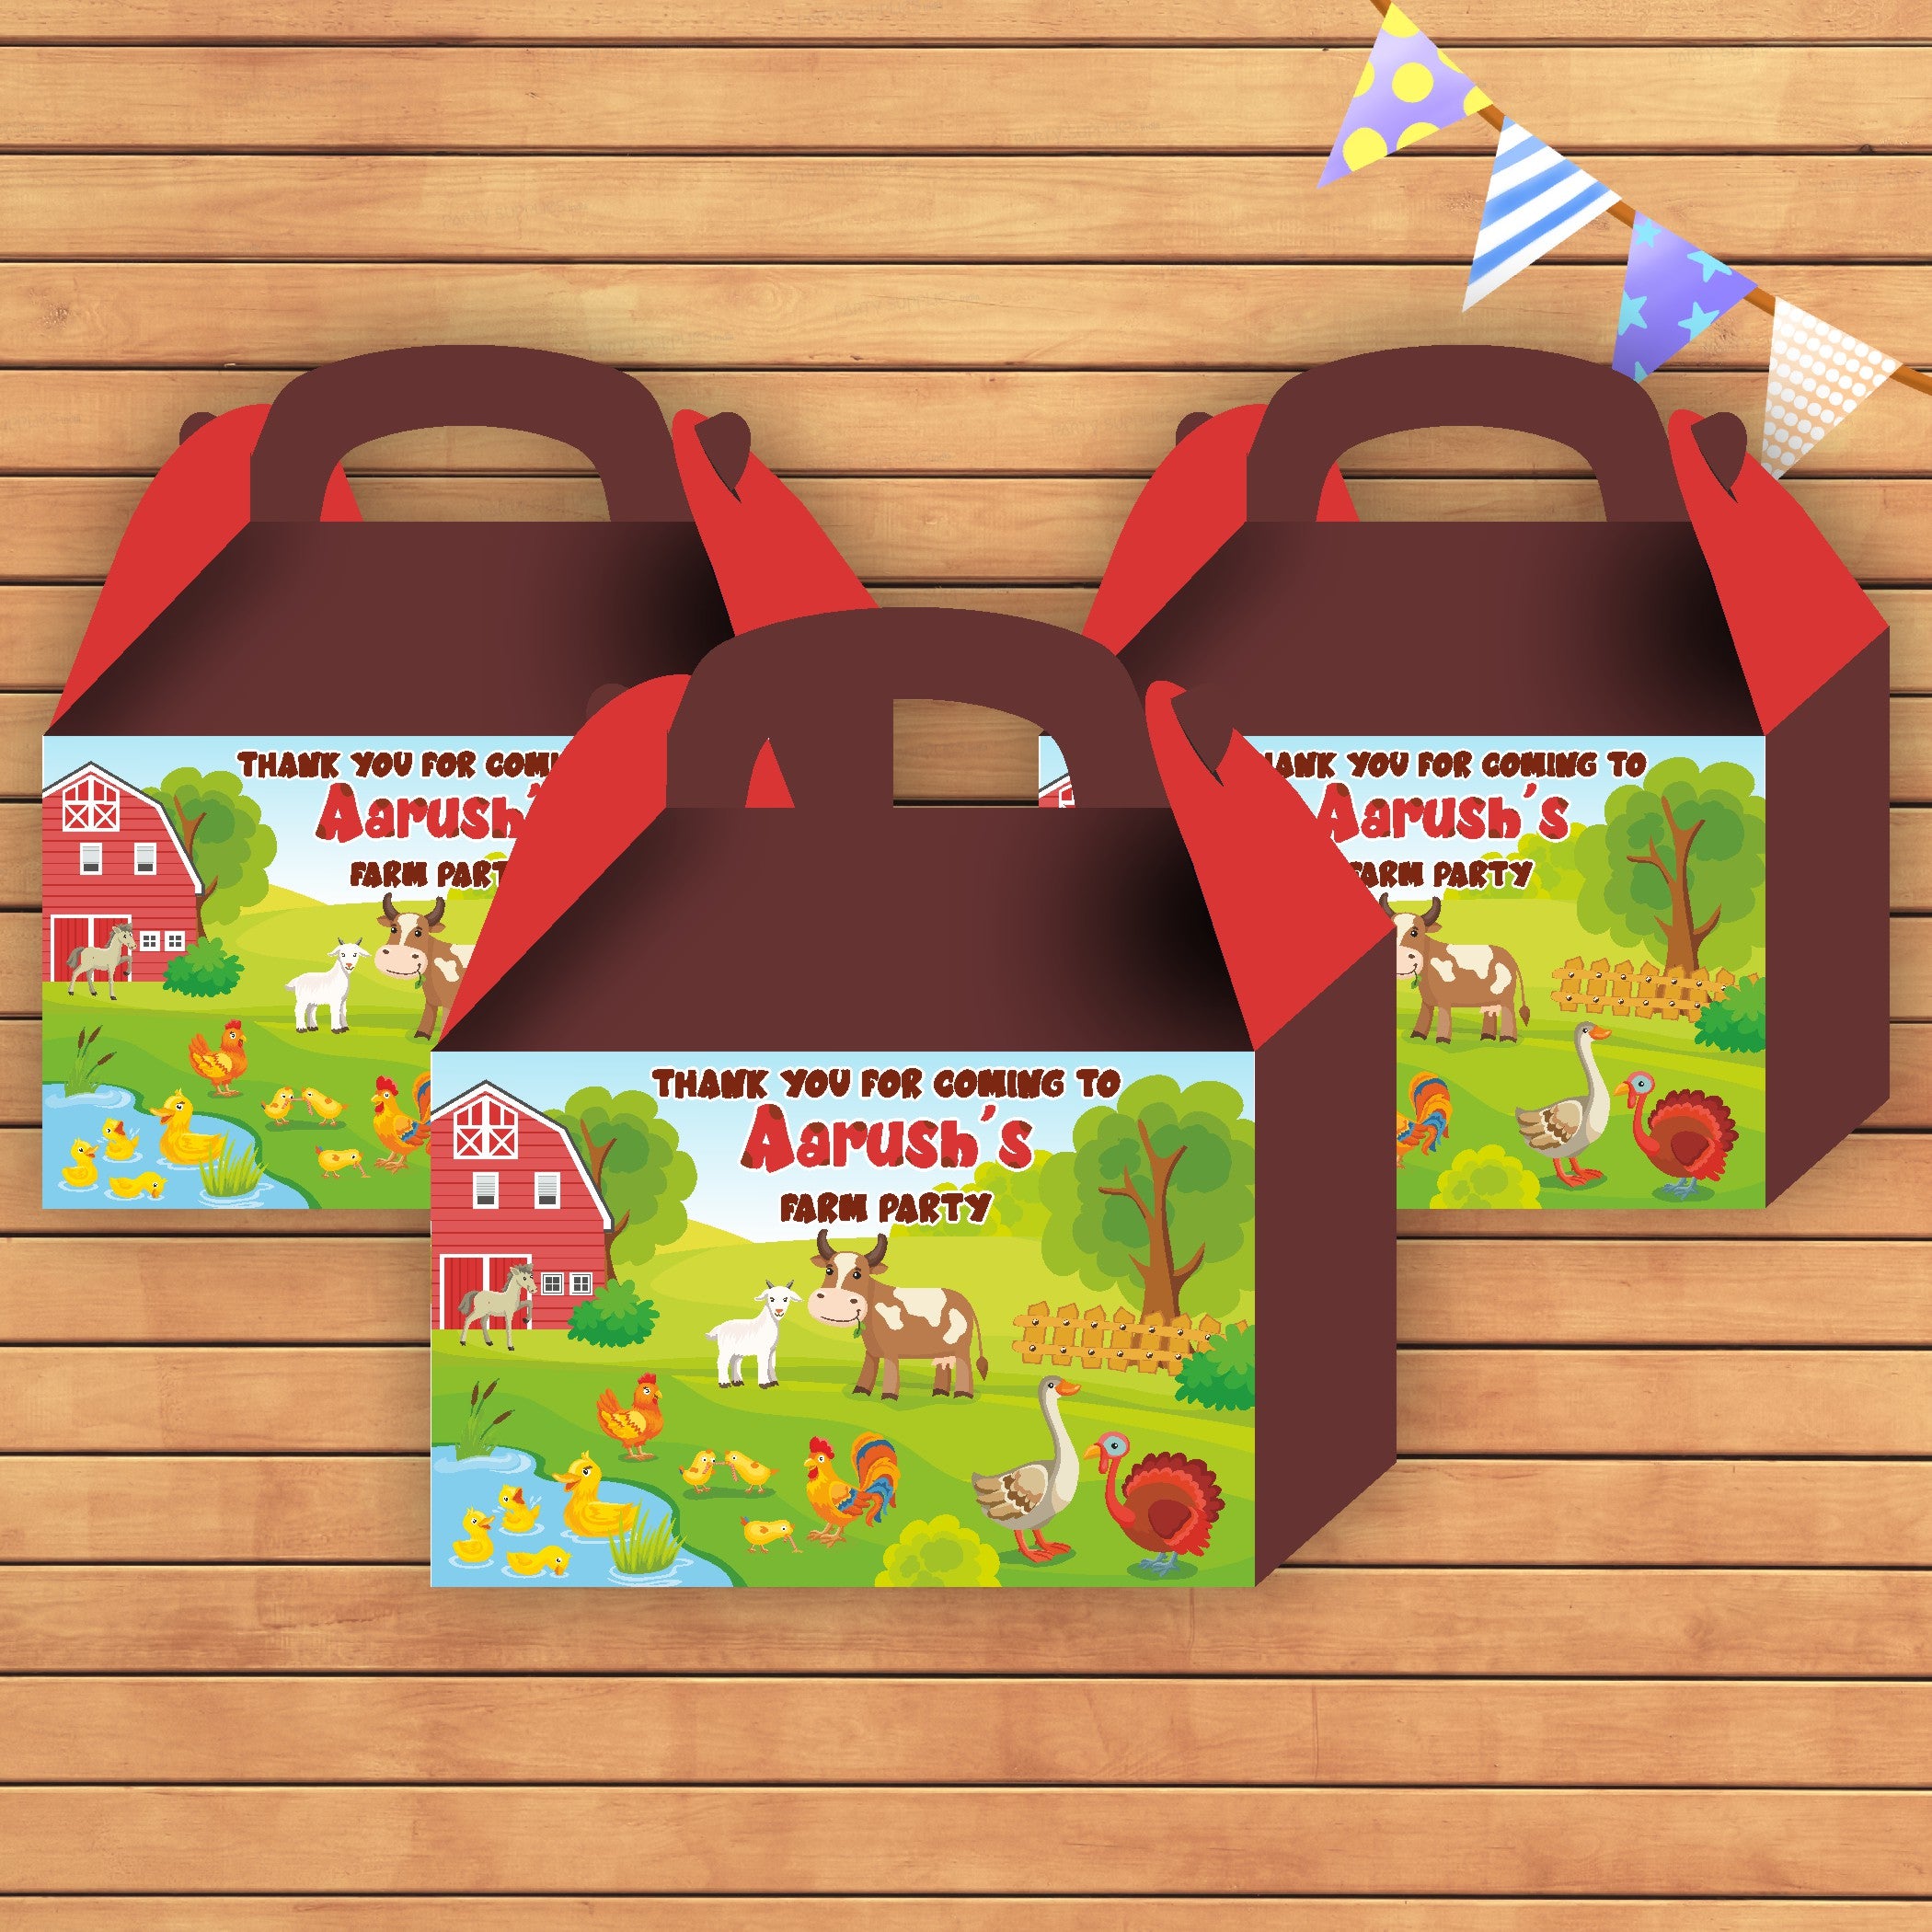 PSI Farm theme Goodie Return Gift Boxes